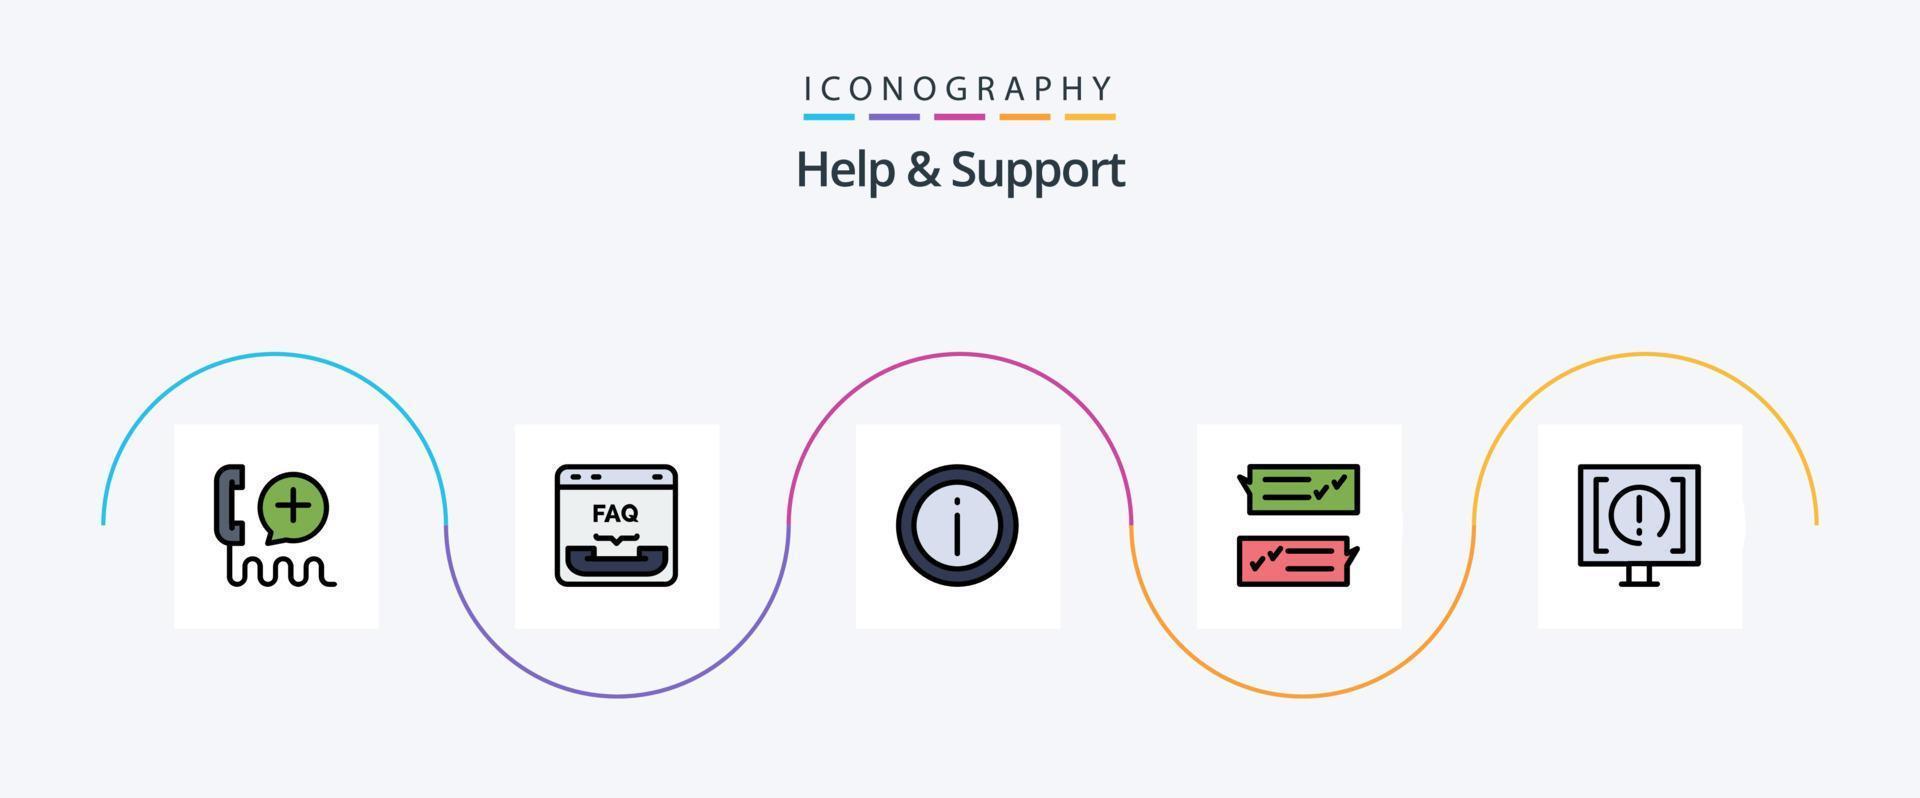 ligne d'aide et de support rempli pack d'icônes plat 5, y compris l'aide. discuter. FAQ. soutien. information vecteur